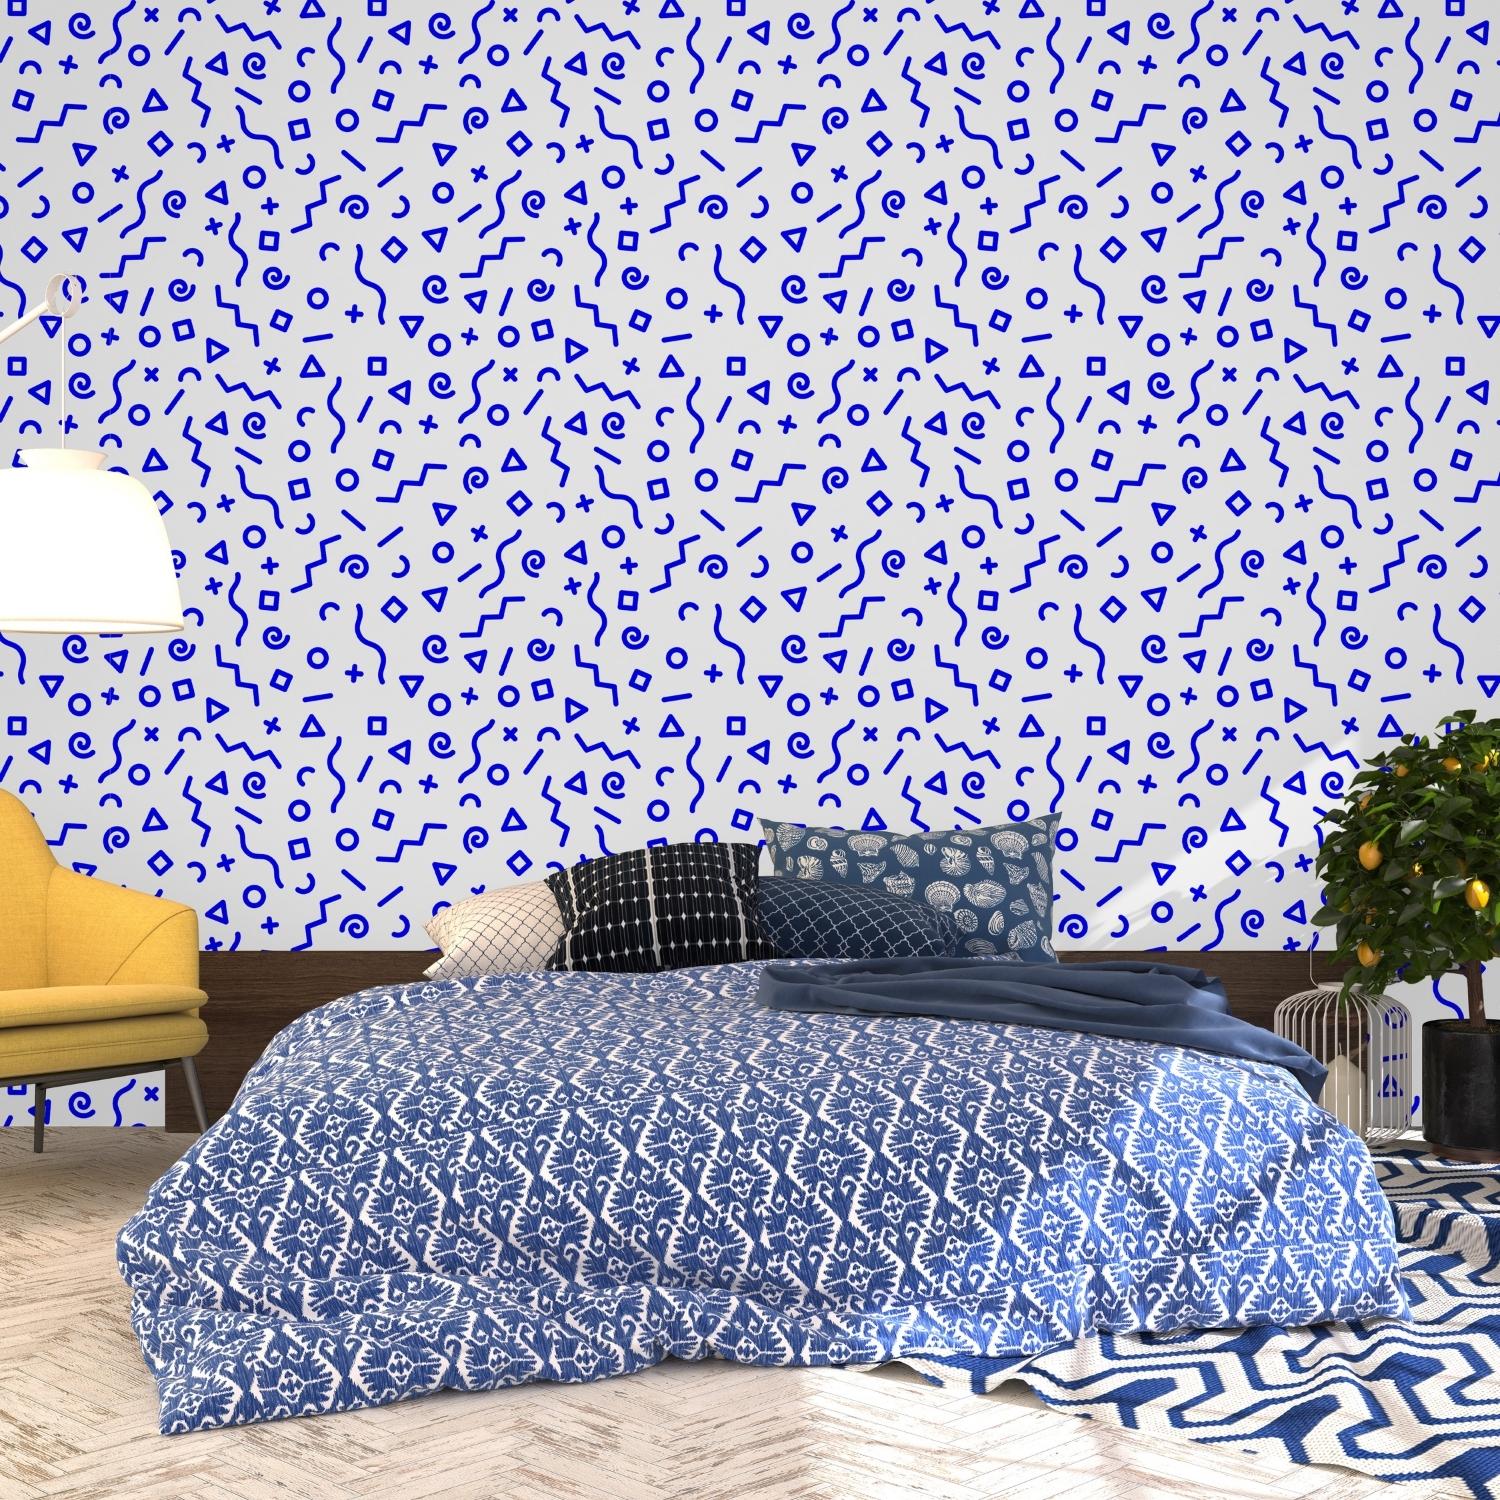 PP5-papier-peint-adhesif-decoratif-revetement-vinyle-motifs-géométriques-bleu-renovation-meuble-mur-4